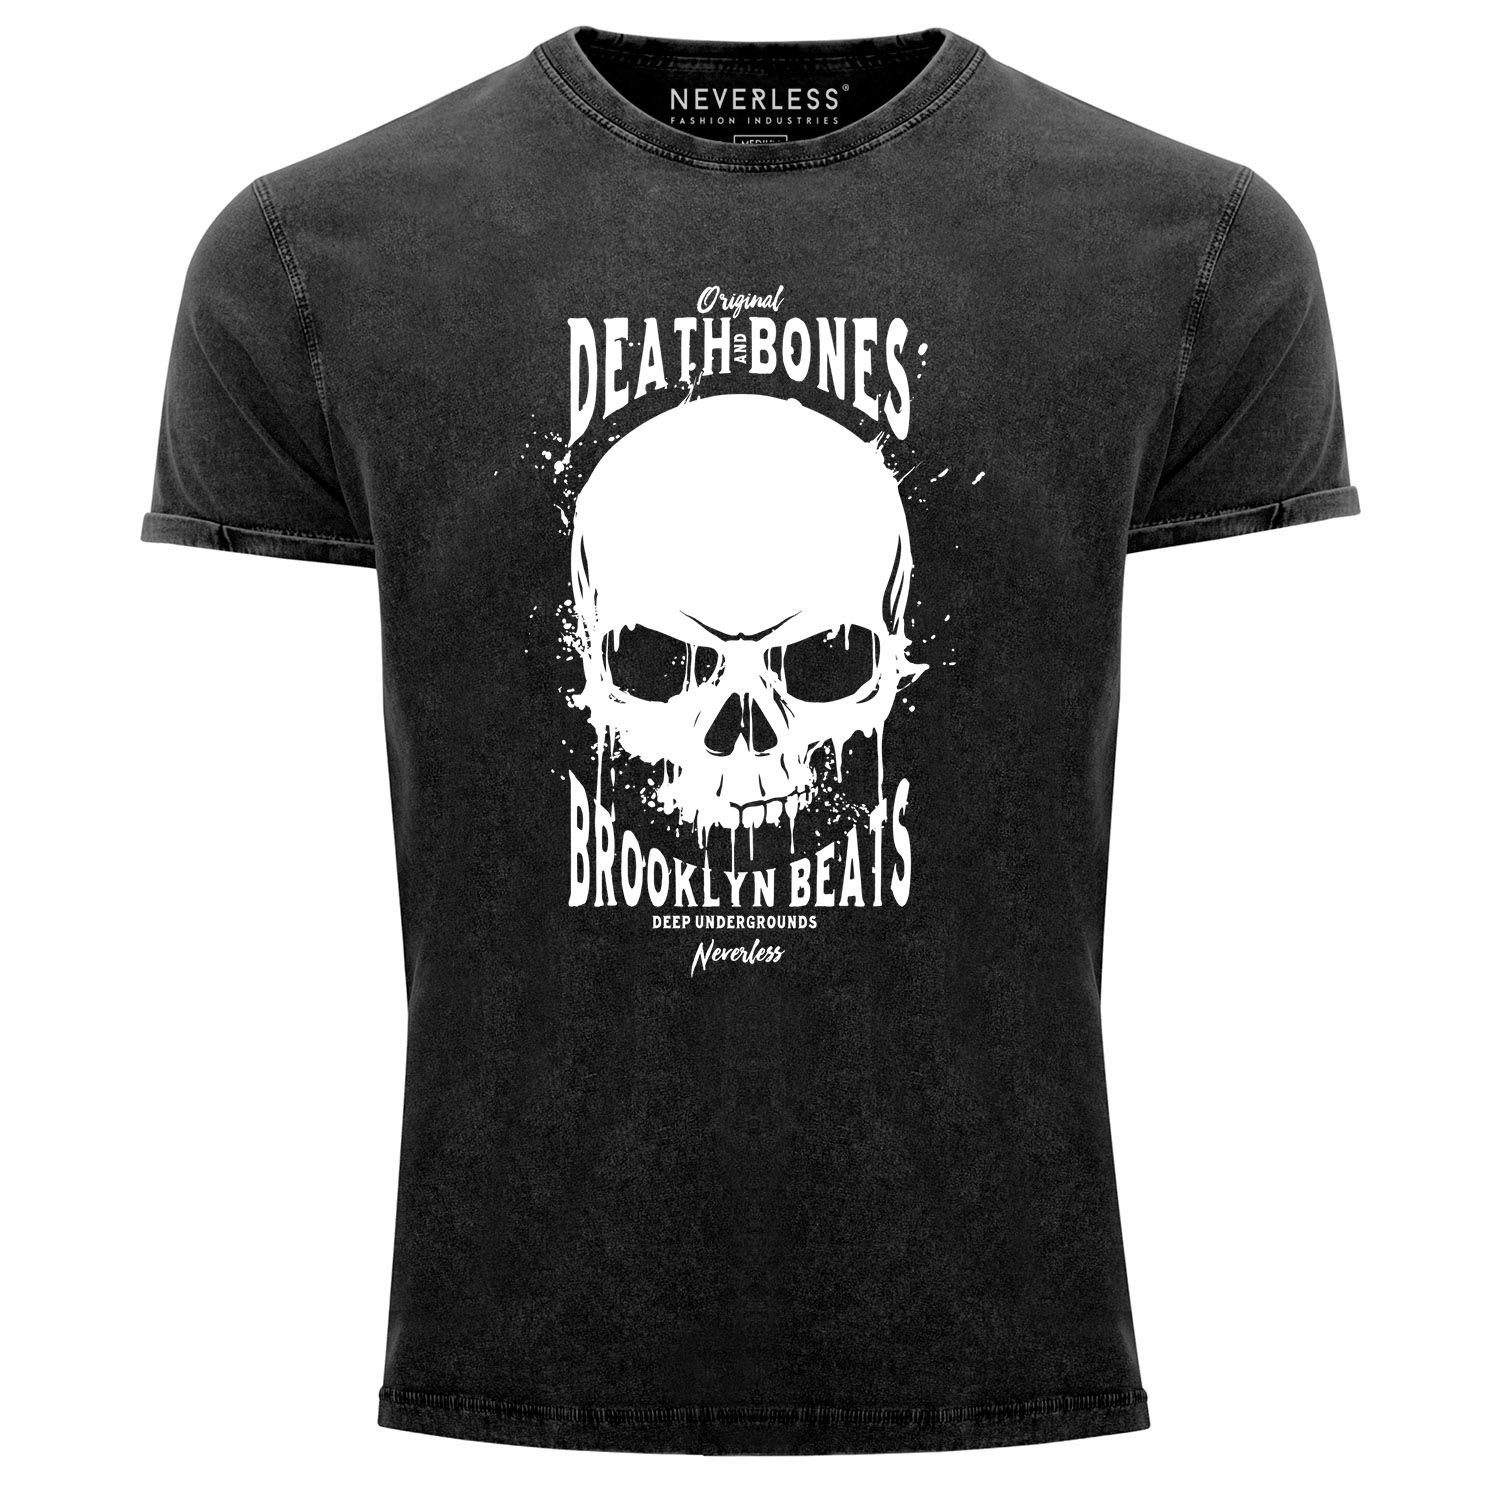 Neverless Print-Shirt Neverless® Herren T-Shirt Vintage Shirt Printshirt Skull Death and Bones Aufdruck Used Look Slim Fit mit Print schwarz